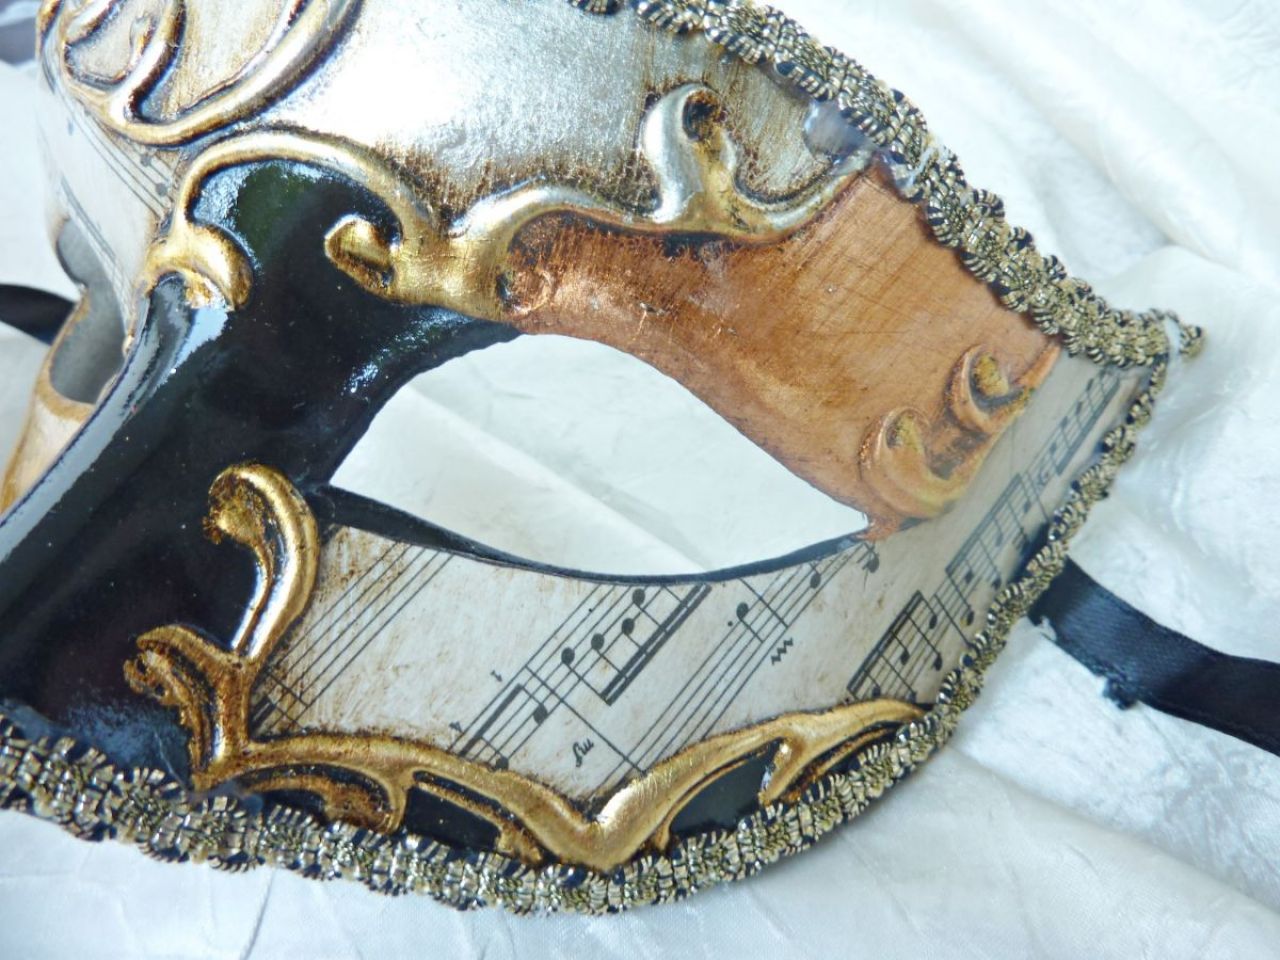 masque loup avec reproductions des partitions de musique, feuille d'or,d'argent et de cuivre